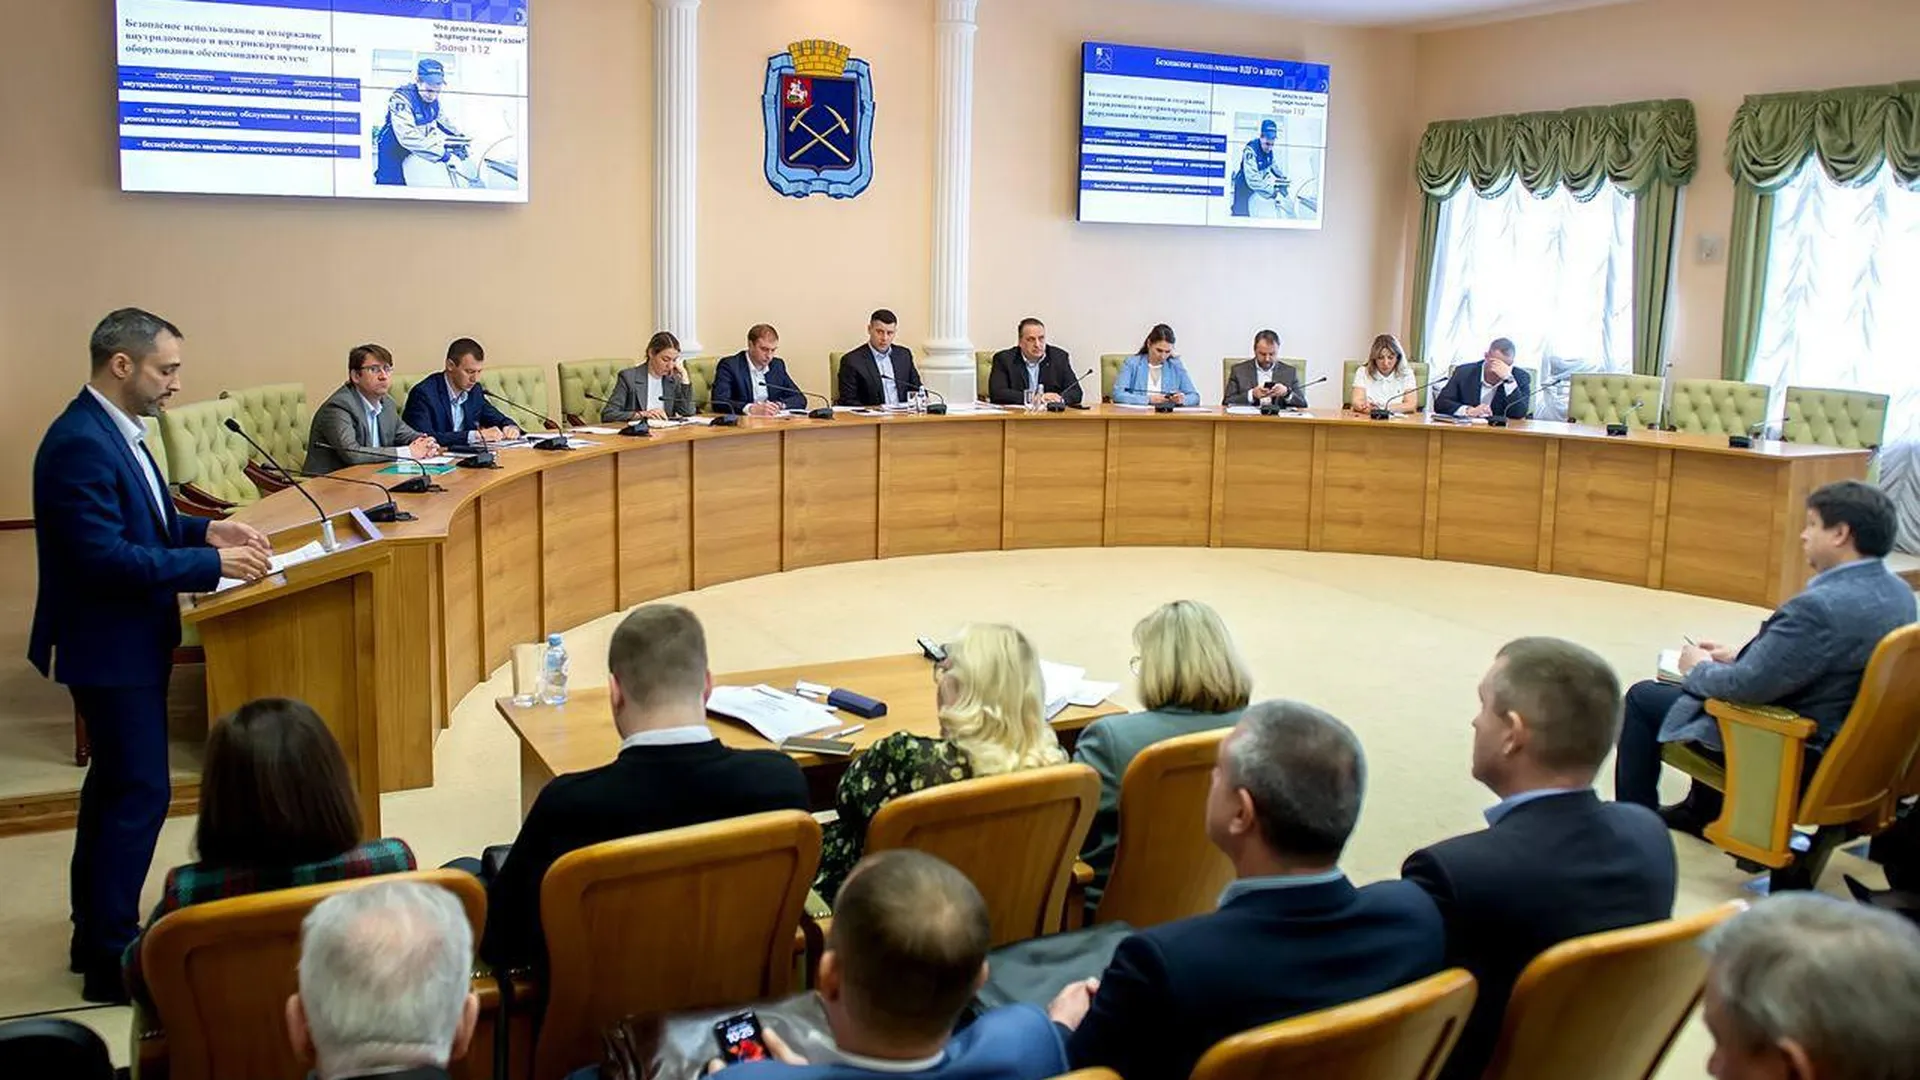 Обеспечение газовой безопасности в МКД Подольска обсудили на совещании